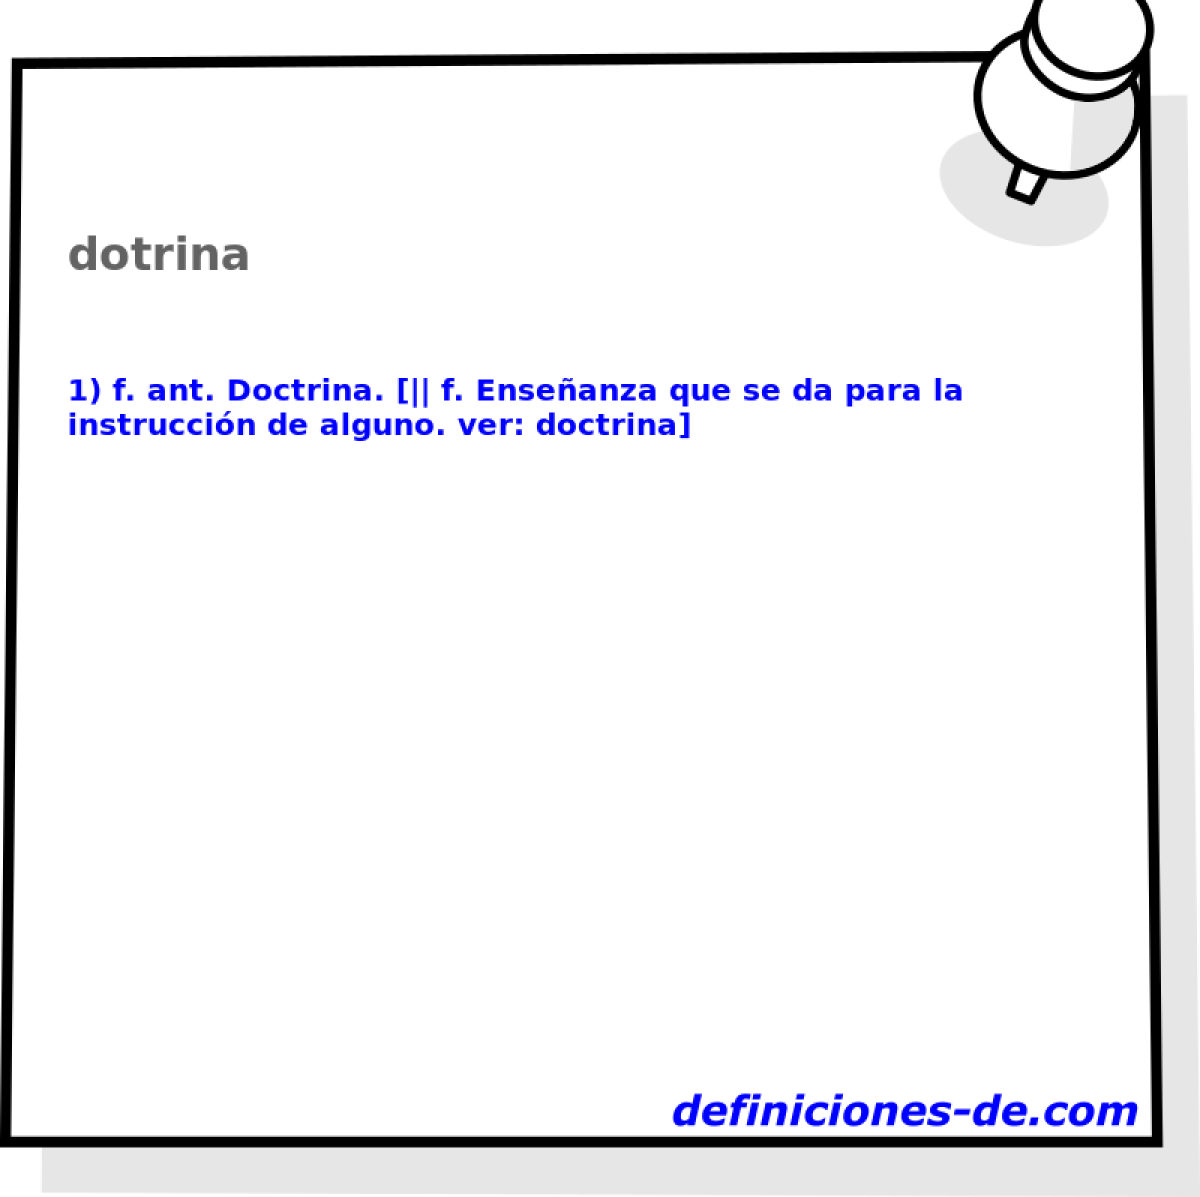 dotrina 